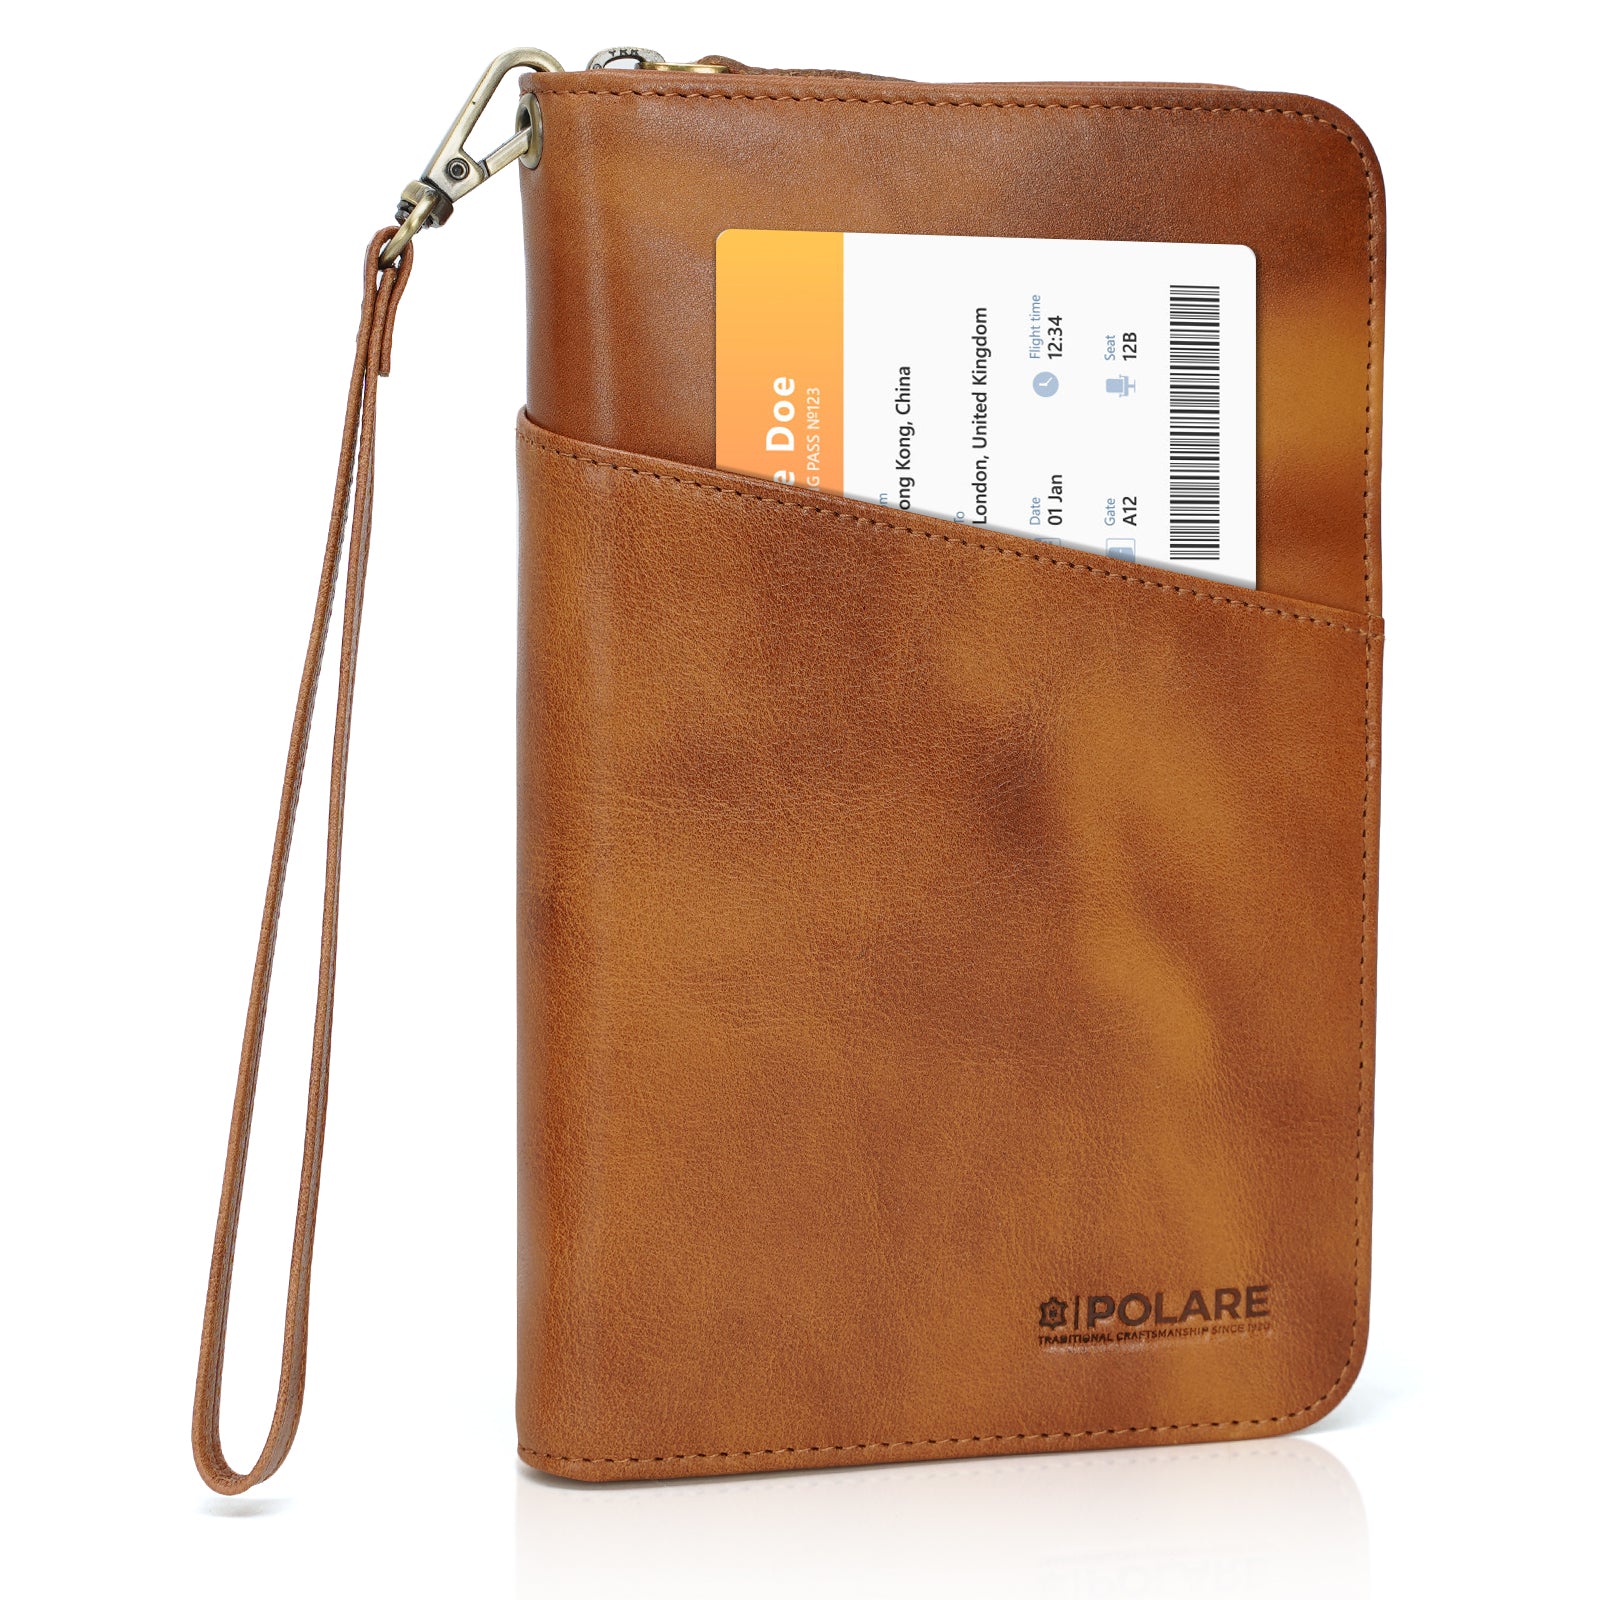 Polare Full Grain Leather Passport Holder Cover Case for Men RFID Blocking Travel Wallet Holds 4 Passports